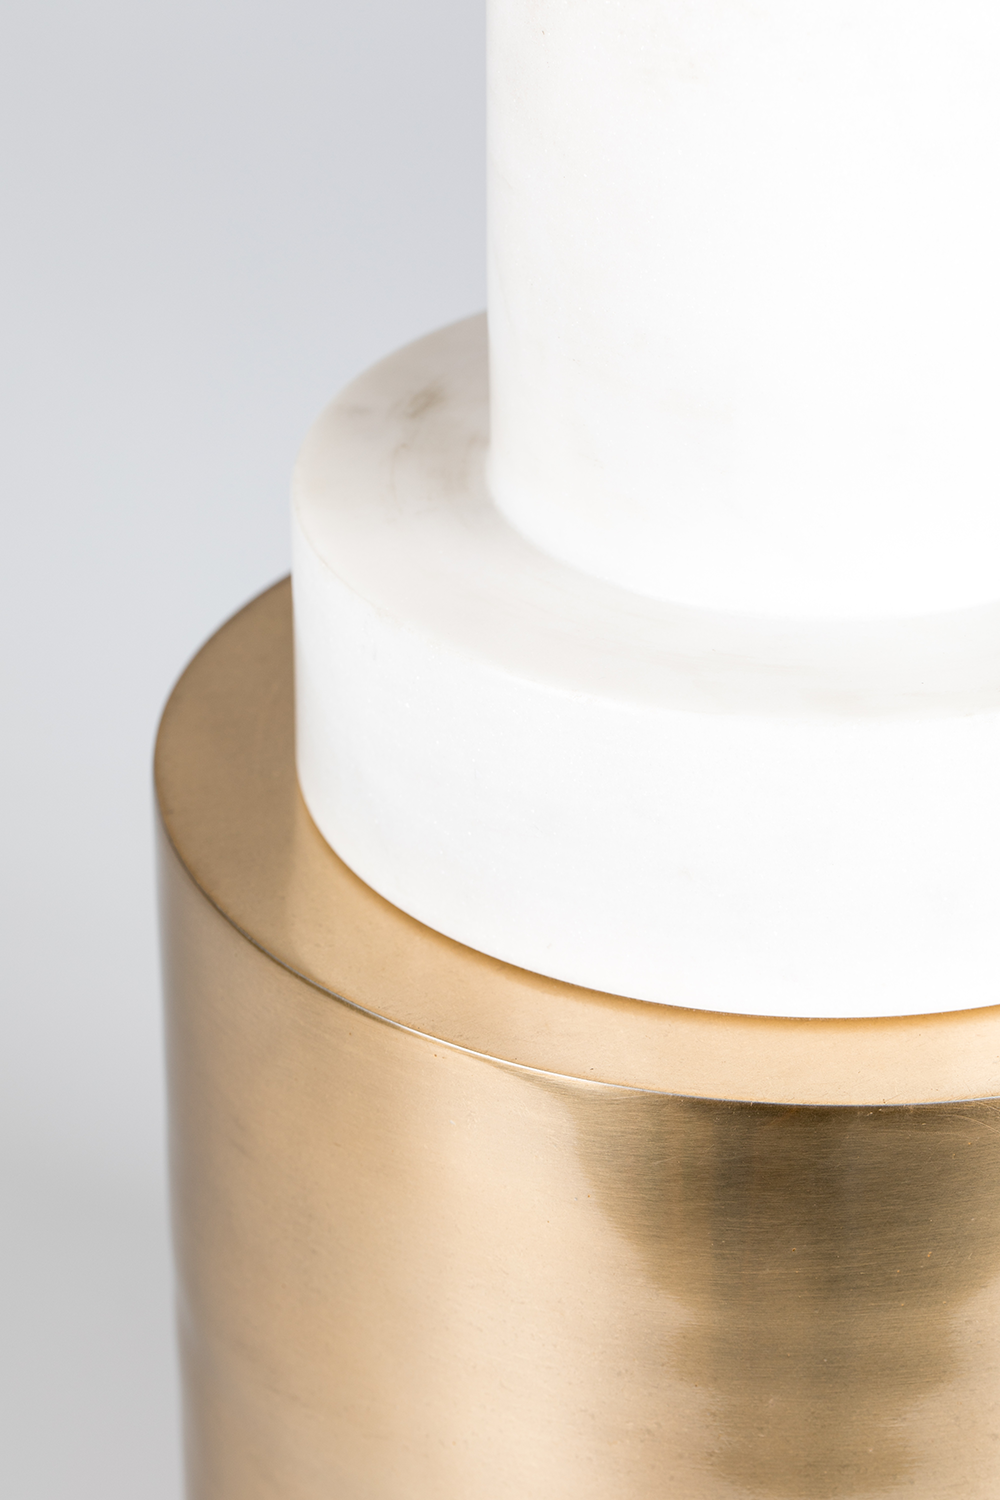 CHUNKY FOOTED Beistelltisch in Gold präsentiert im Onlineshop von KAQTU Design AG. Beistelltisch ist von Bold Monkey